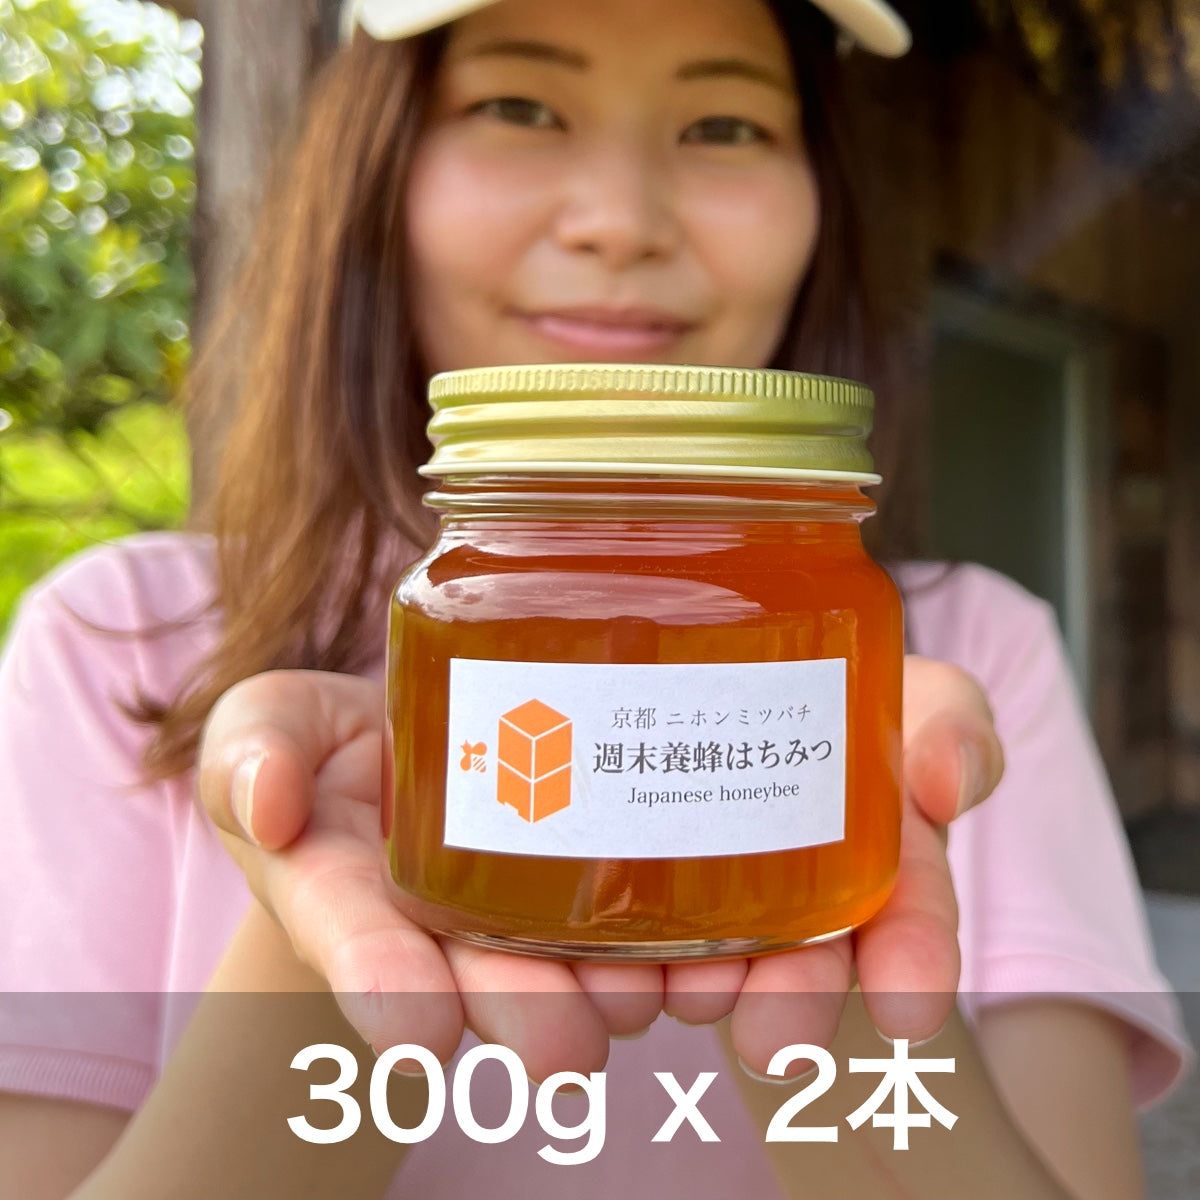 ニホンミツバチの幻のハチミツ 【300g × 2本】